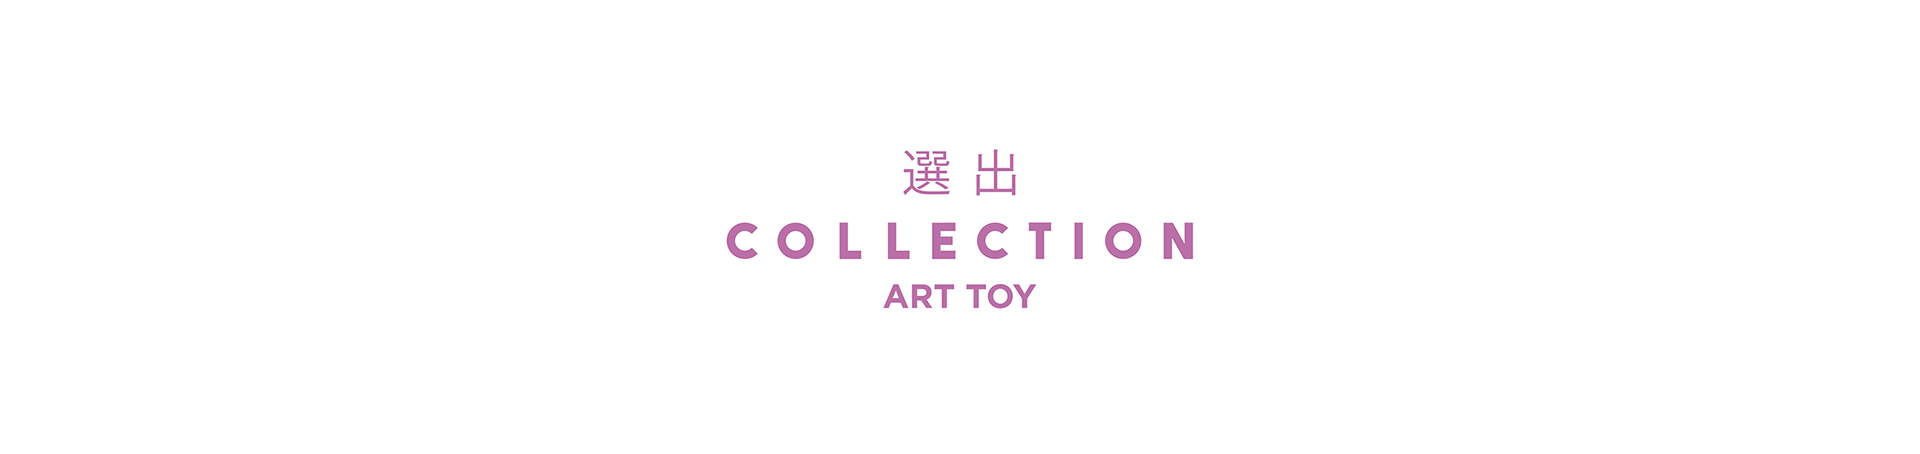 Collection | Art-Toy on Behancec3cc3090282601.5e1387ca4e34d.png